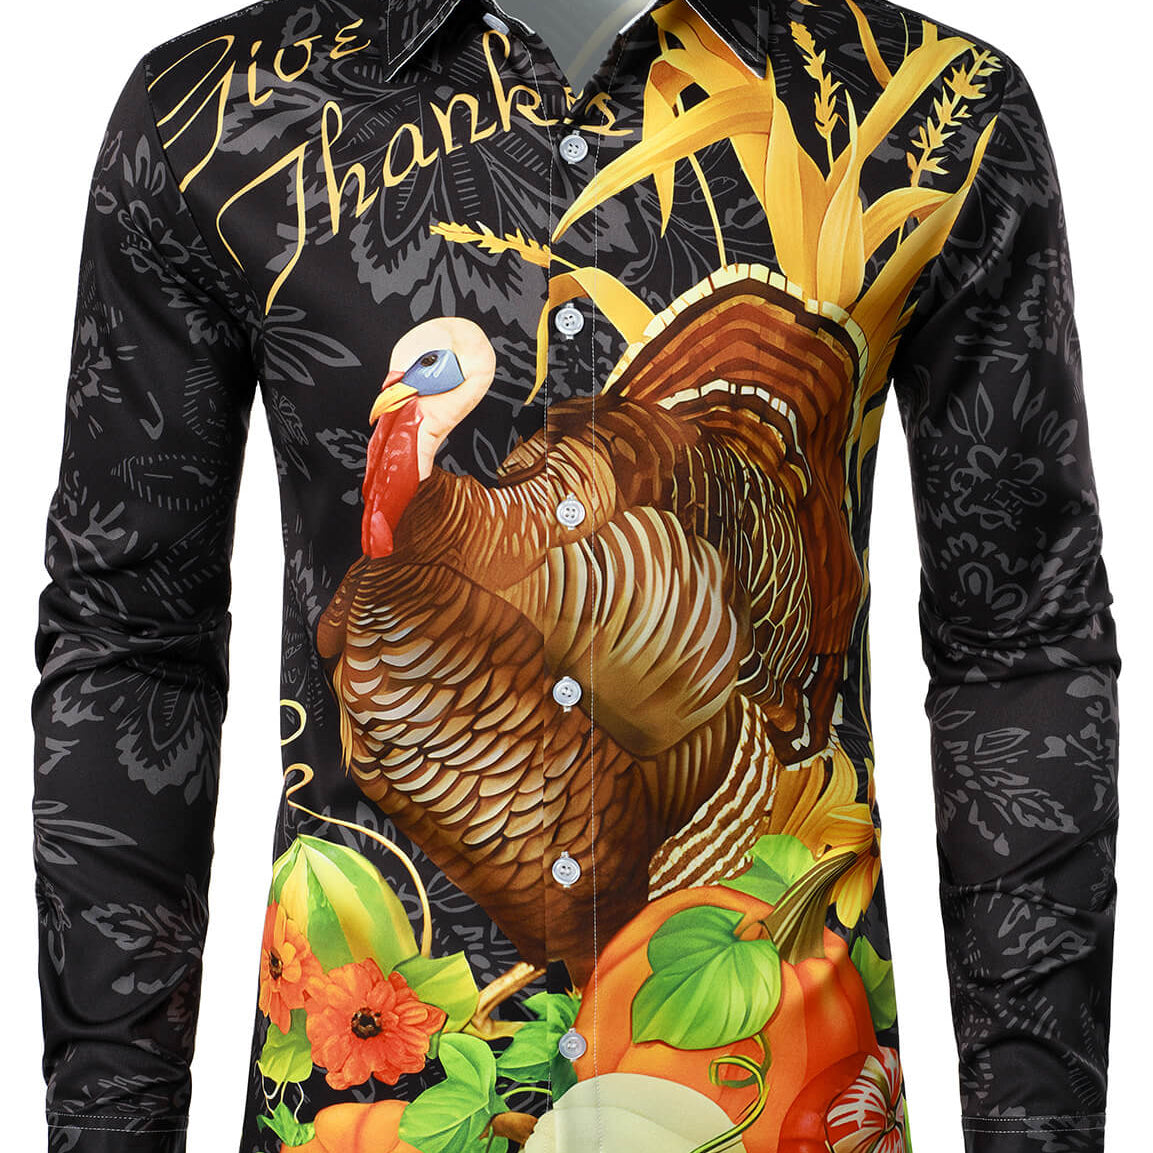 Men's Turkey Thanksgiving Fall Festival Pumpkin Holiday Button Up Long Sleeve Shirt